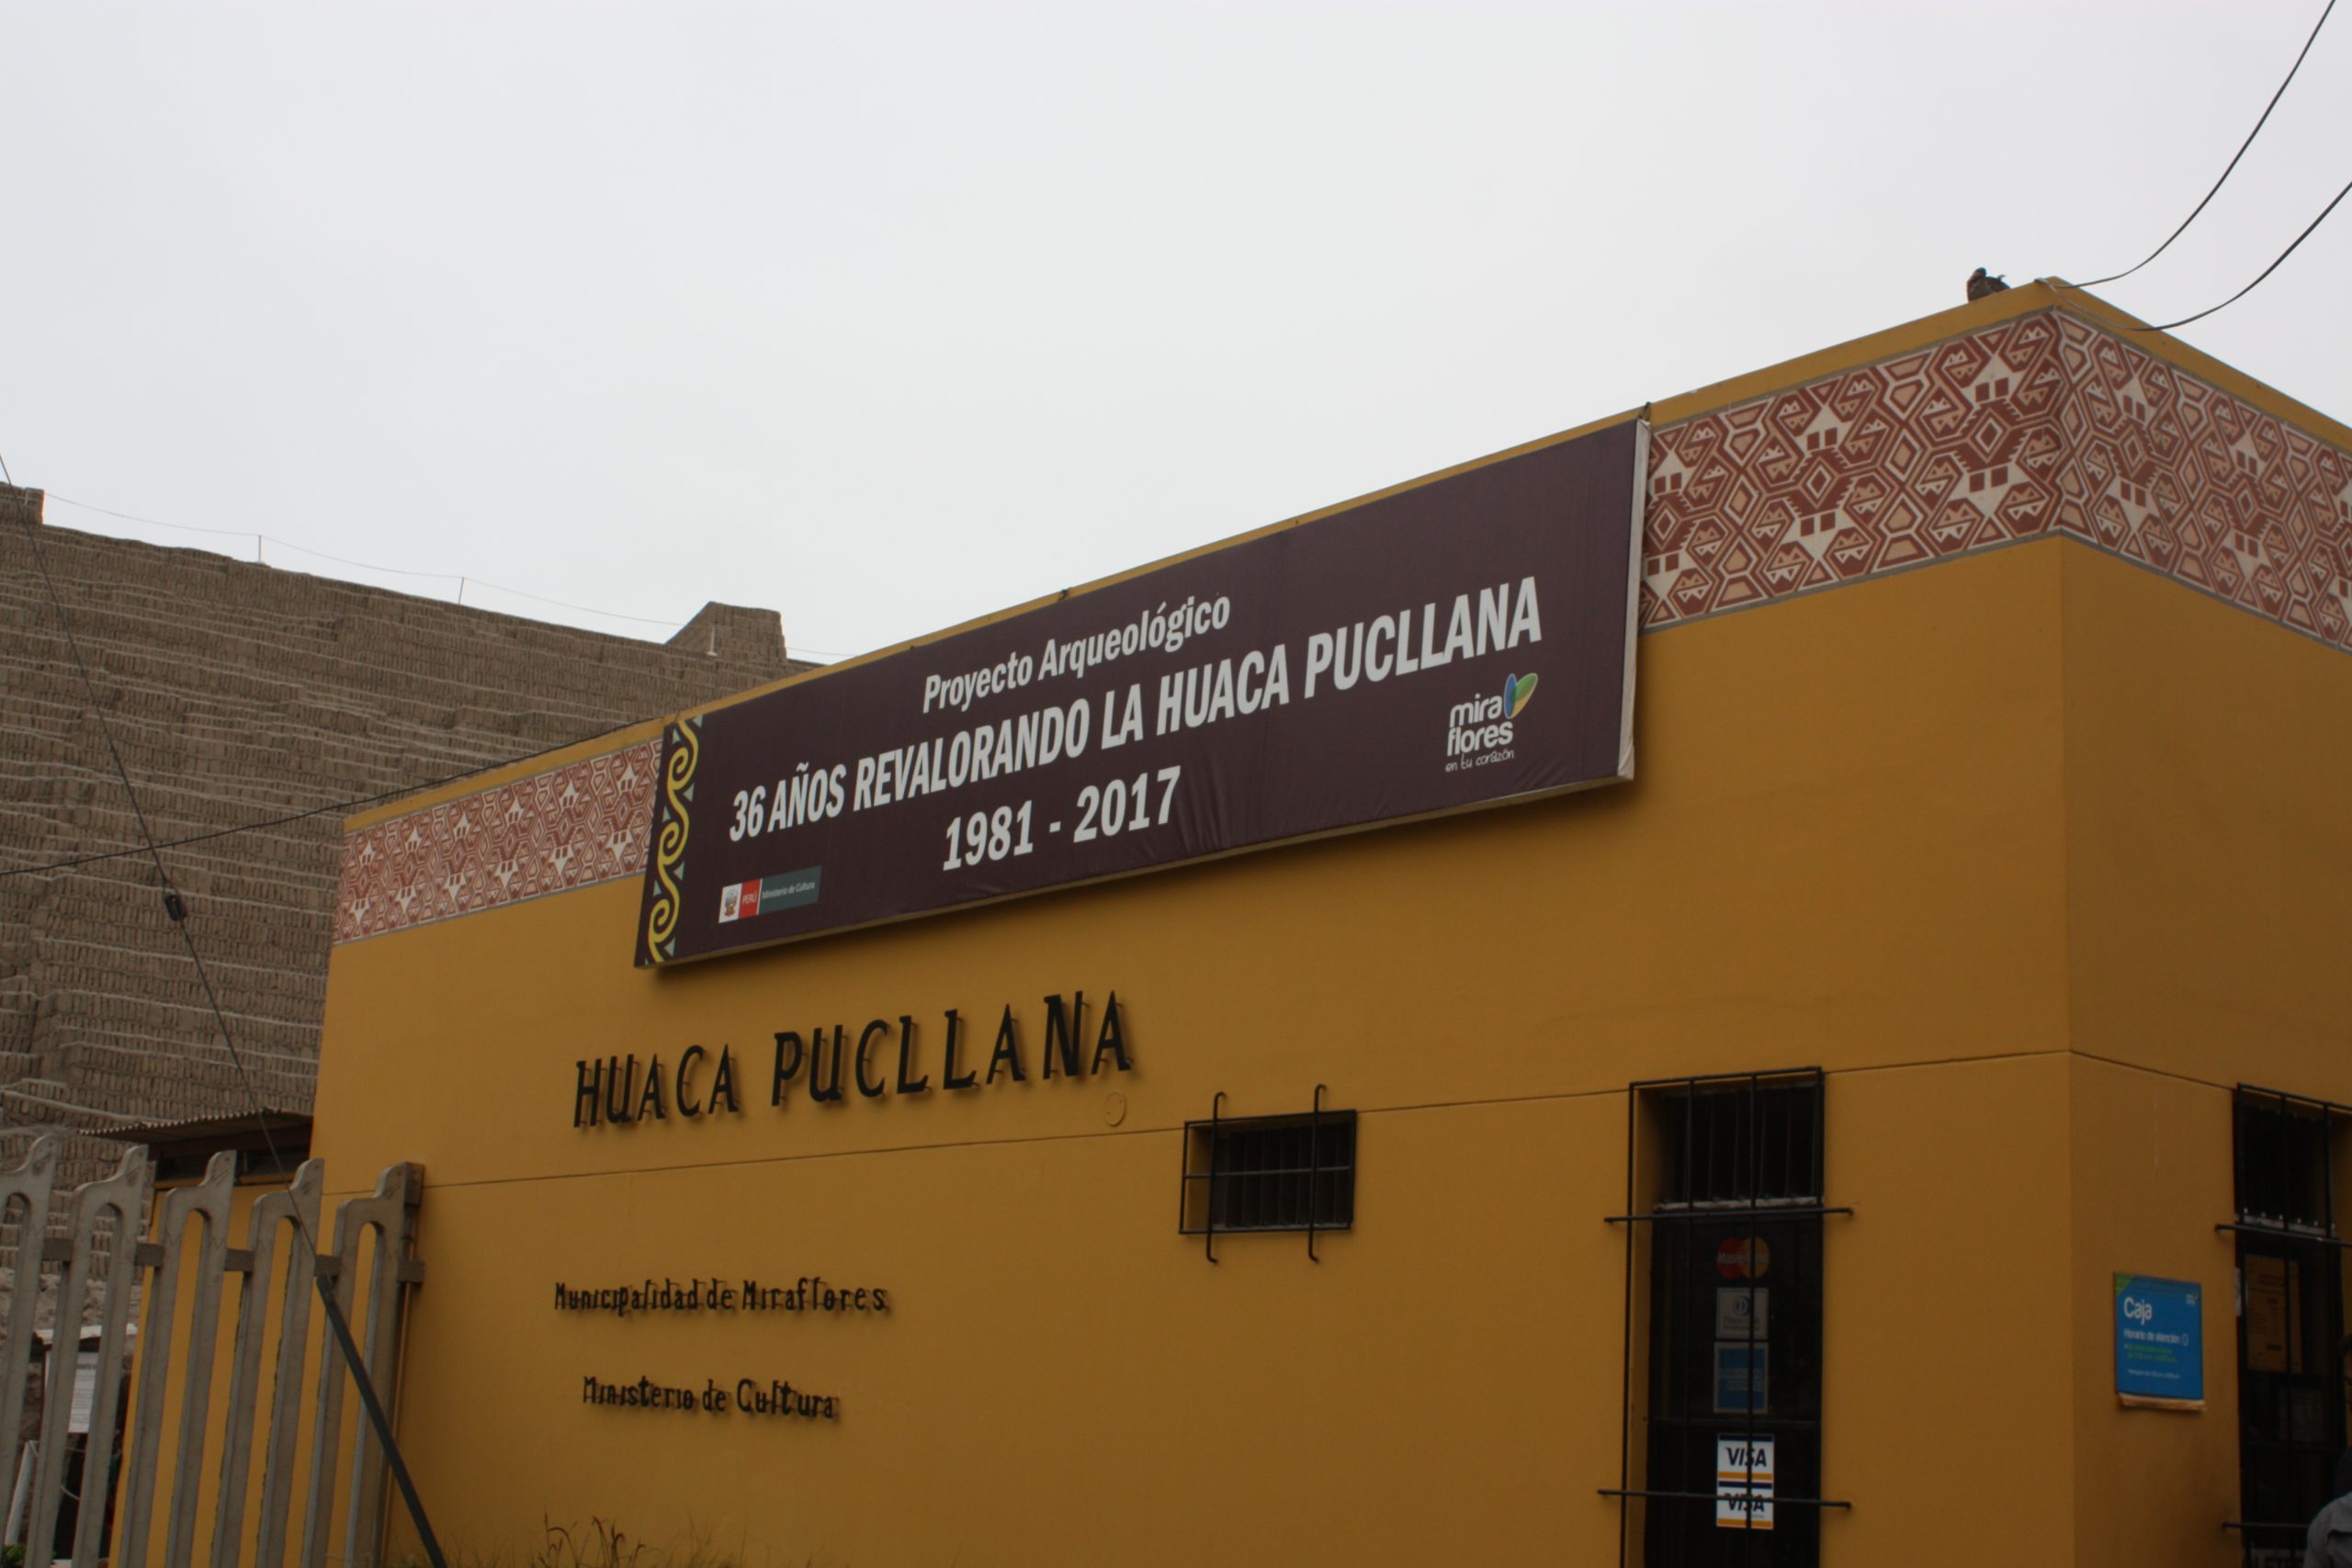 Huaca Pucllana Peru tour Far Horizons